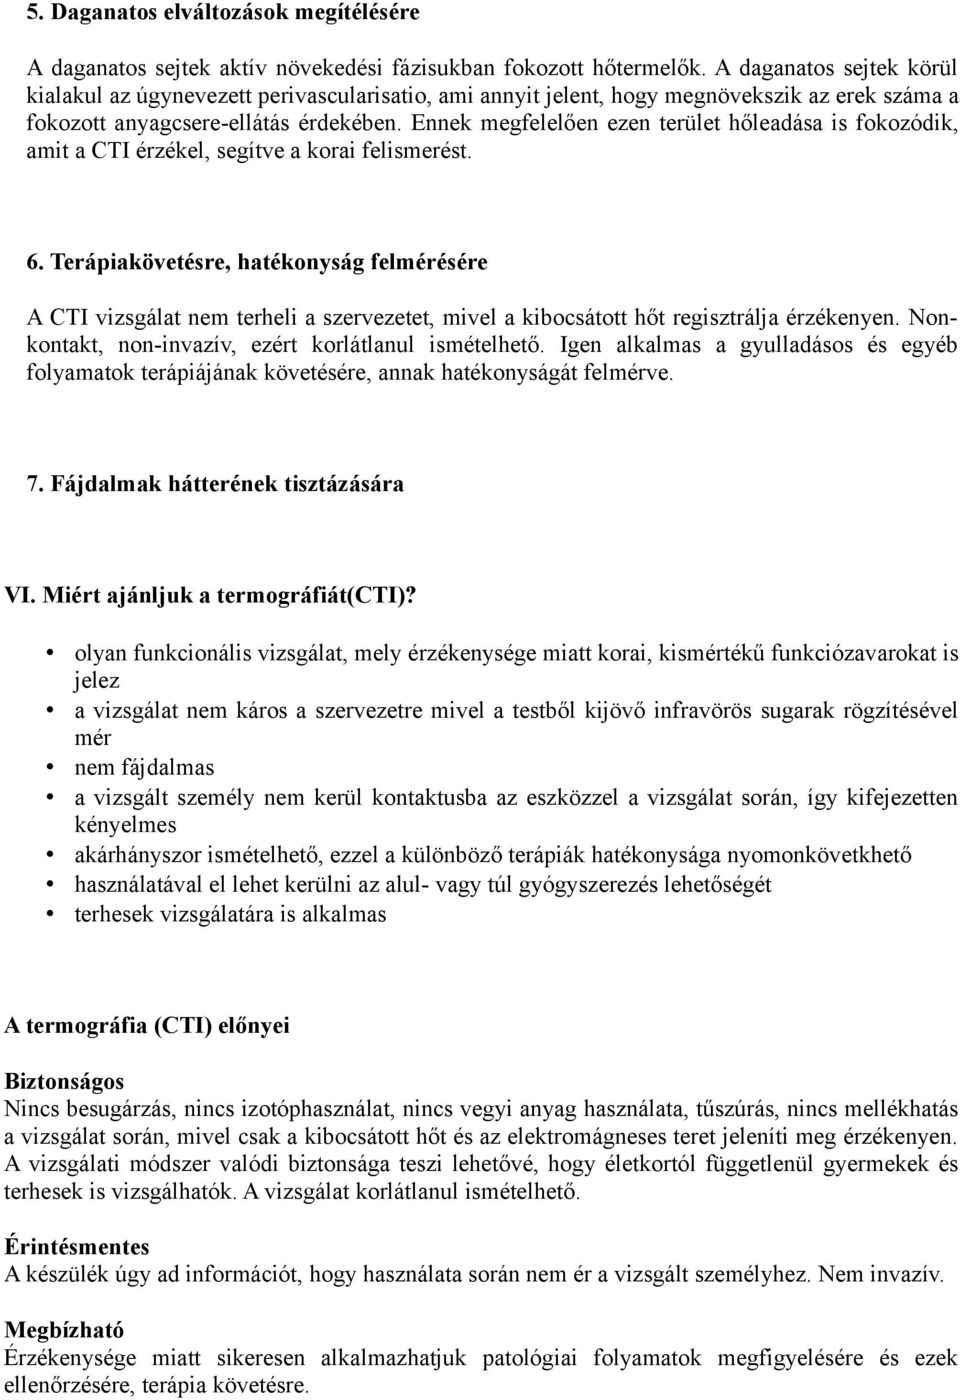 A termográfiáról. Tartalomjegyzék. I. Mit jelent a termográfia (CTI)? - PDF  Ingyenes letöltés